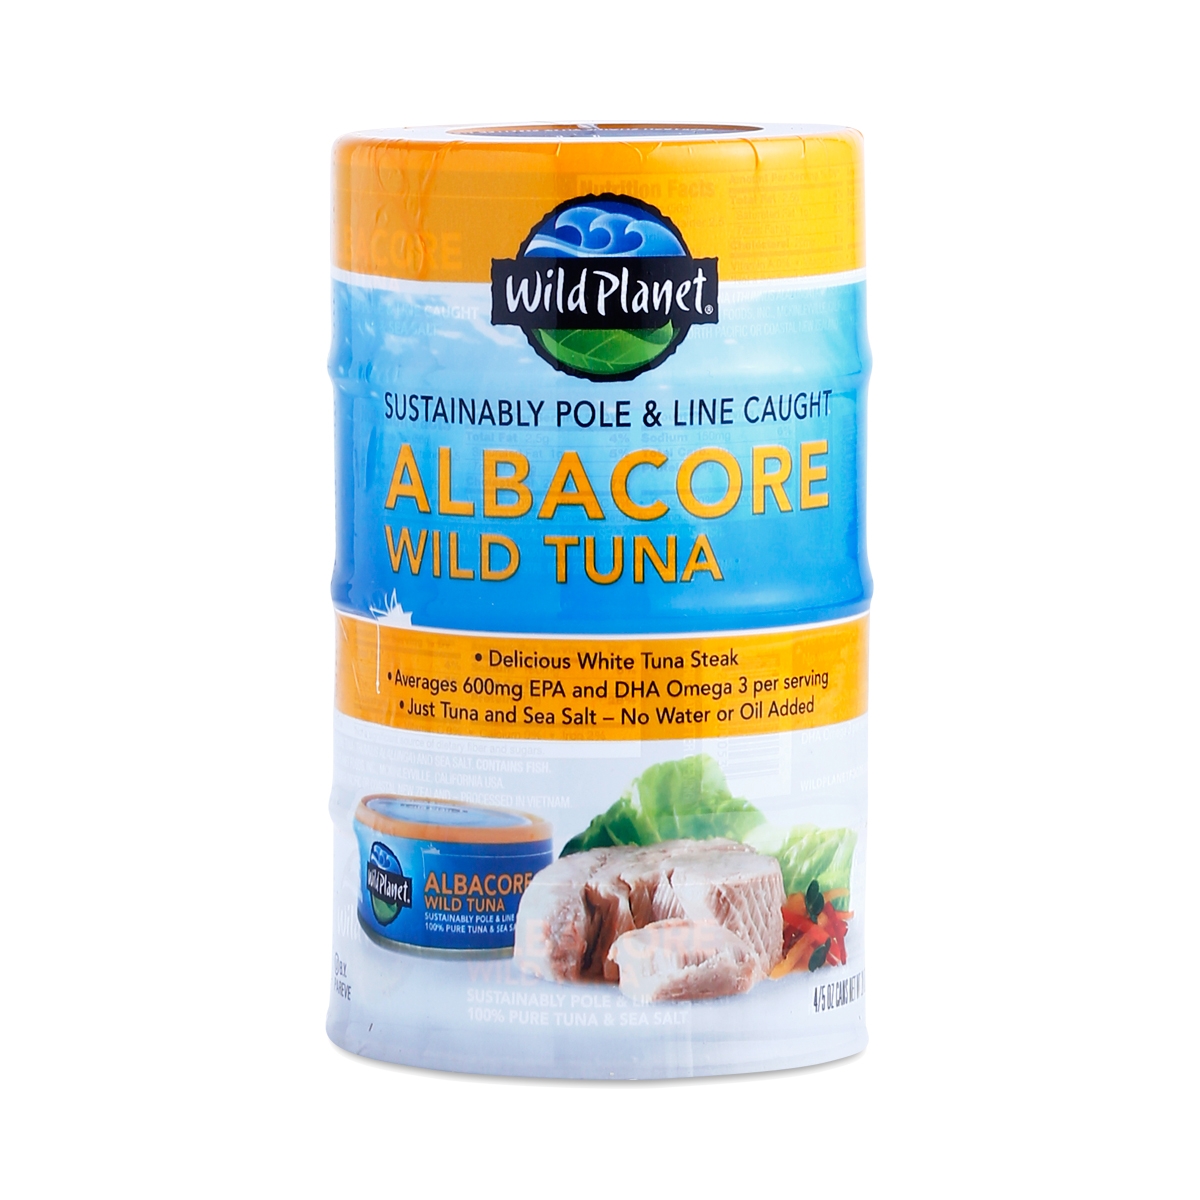 Wild Planet Albacore Tuna 4 cans (5 oz each)